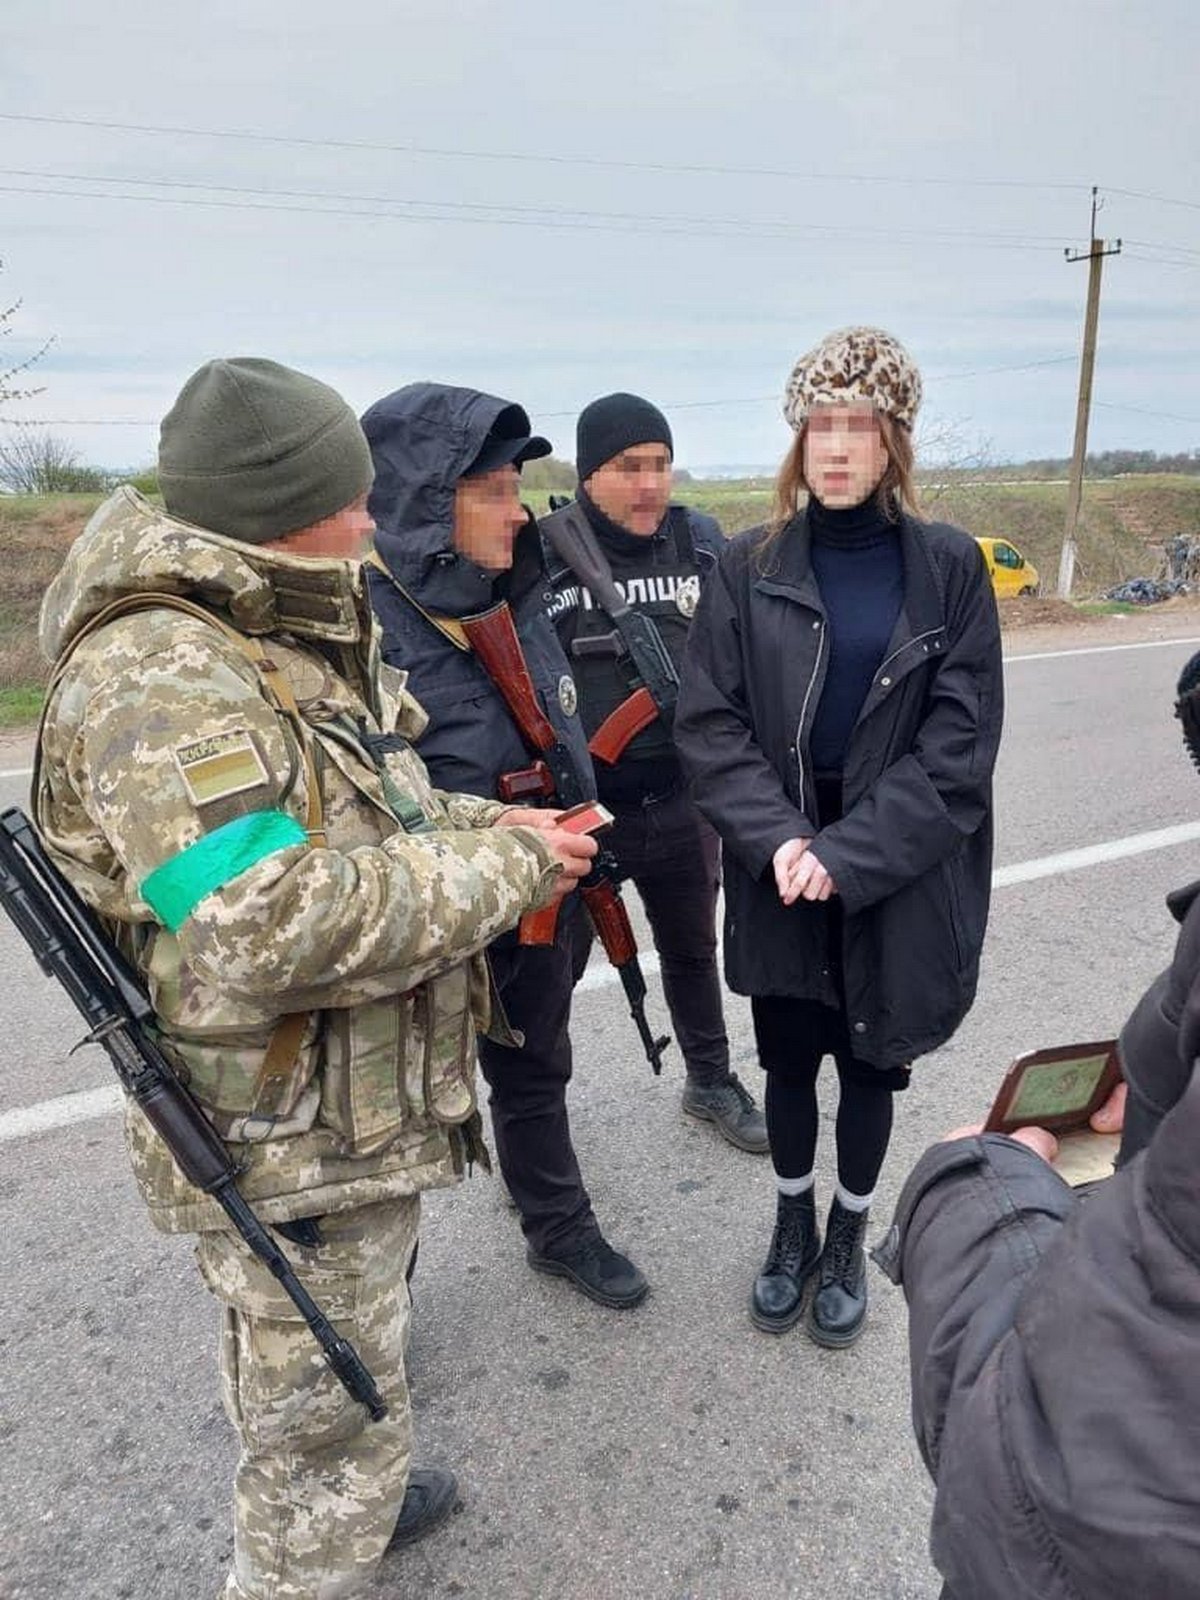 Les autorités ukrainiennes arrêtent un homme qui s’est habillé en femme pour éviter la conscription